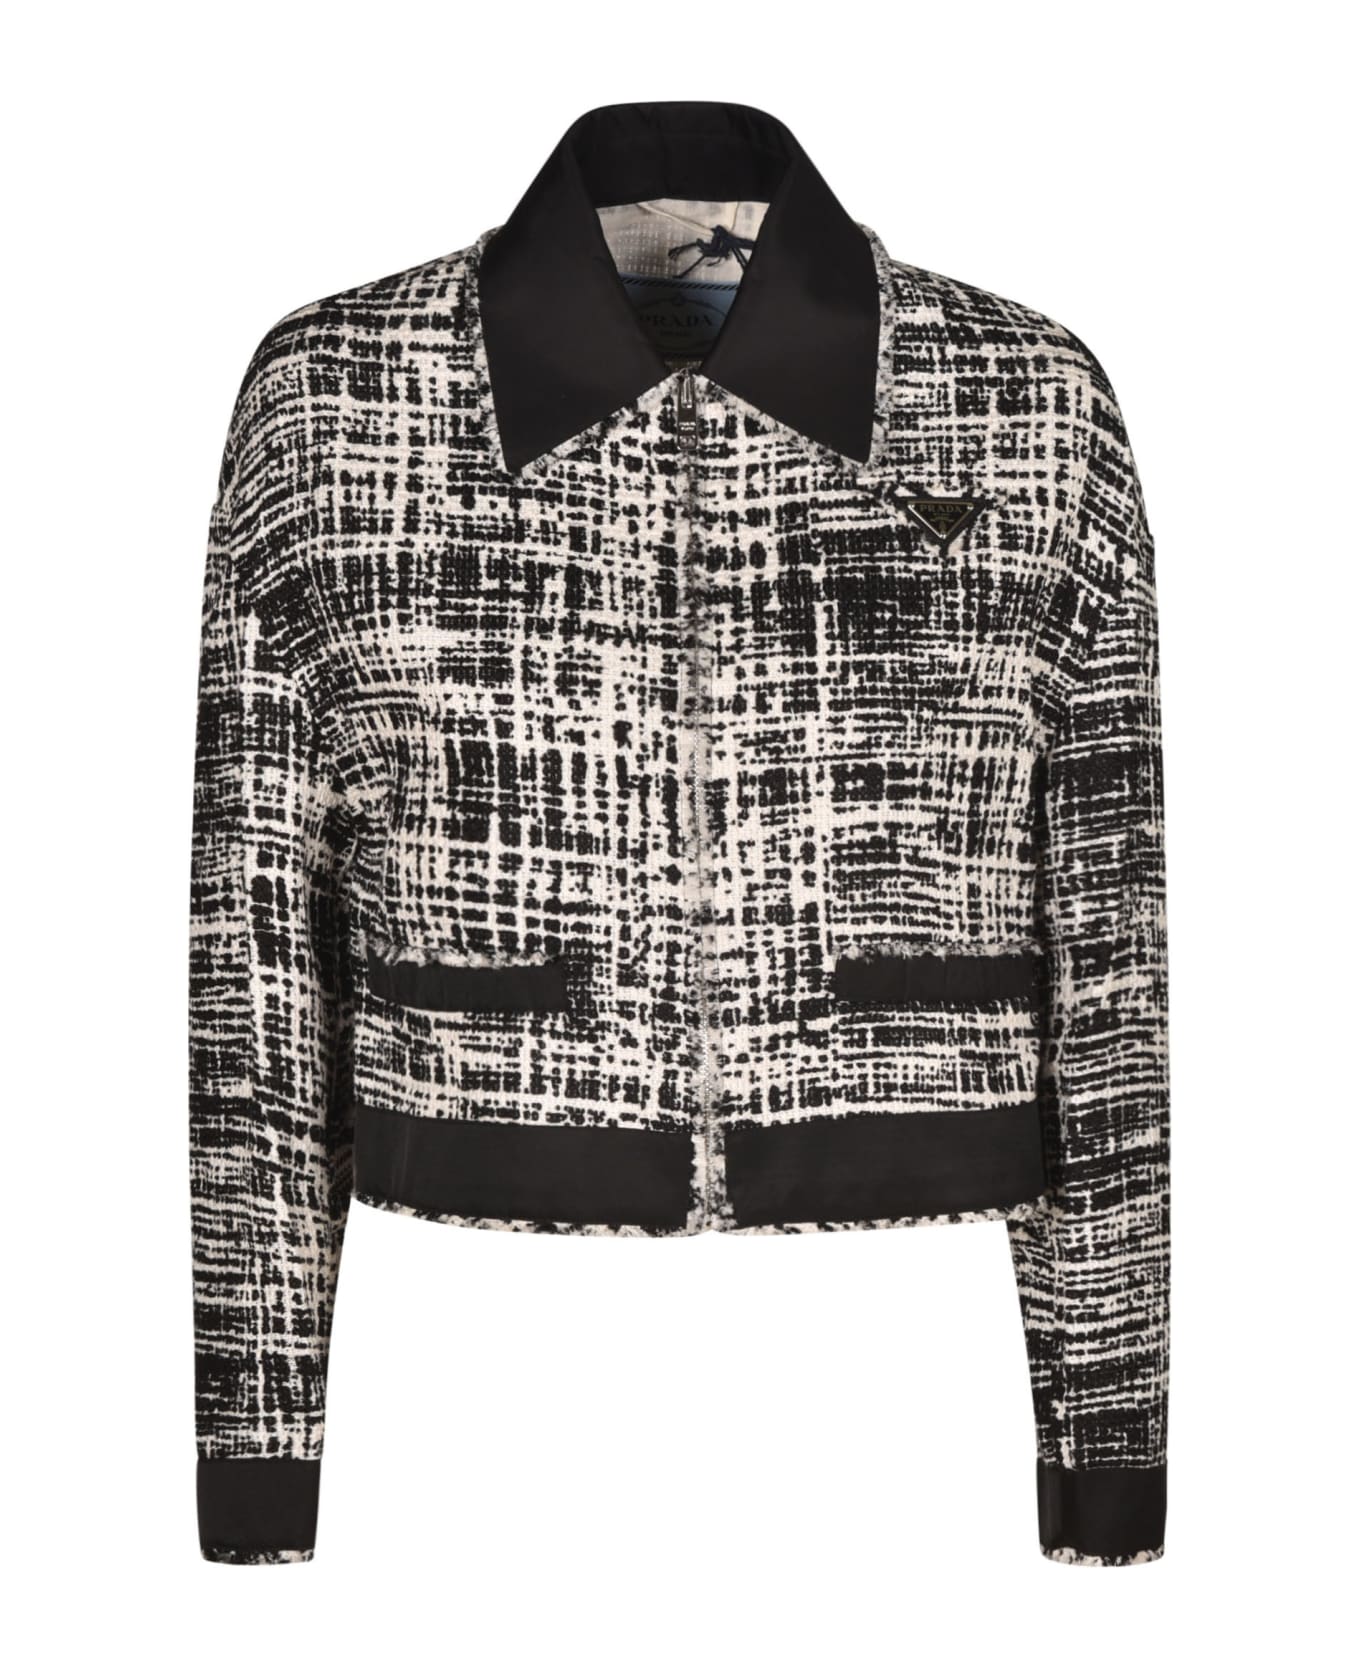 Prada Tweed Cropped Jacket - Ivory/Black